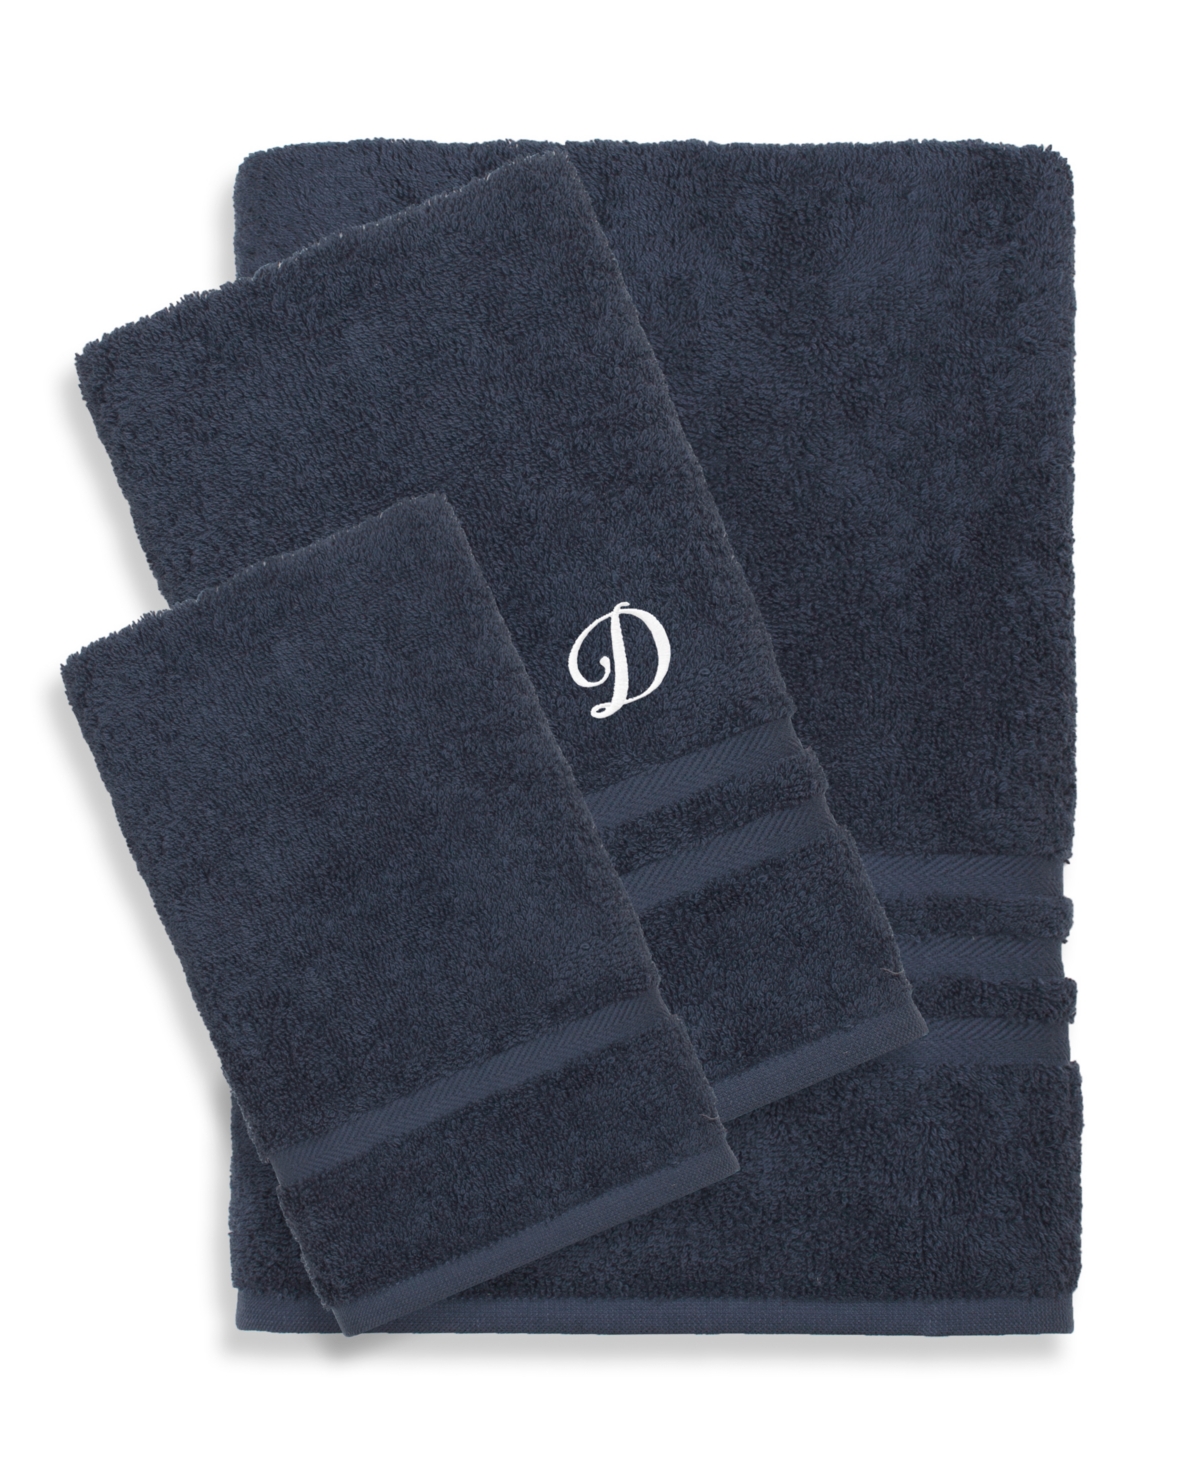 Linum Home Textiles Turkish Cotton Personalized Denzi Towel Set, 3 Piece In Blue